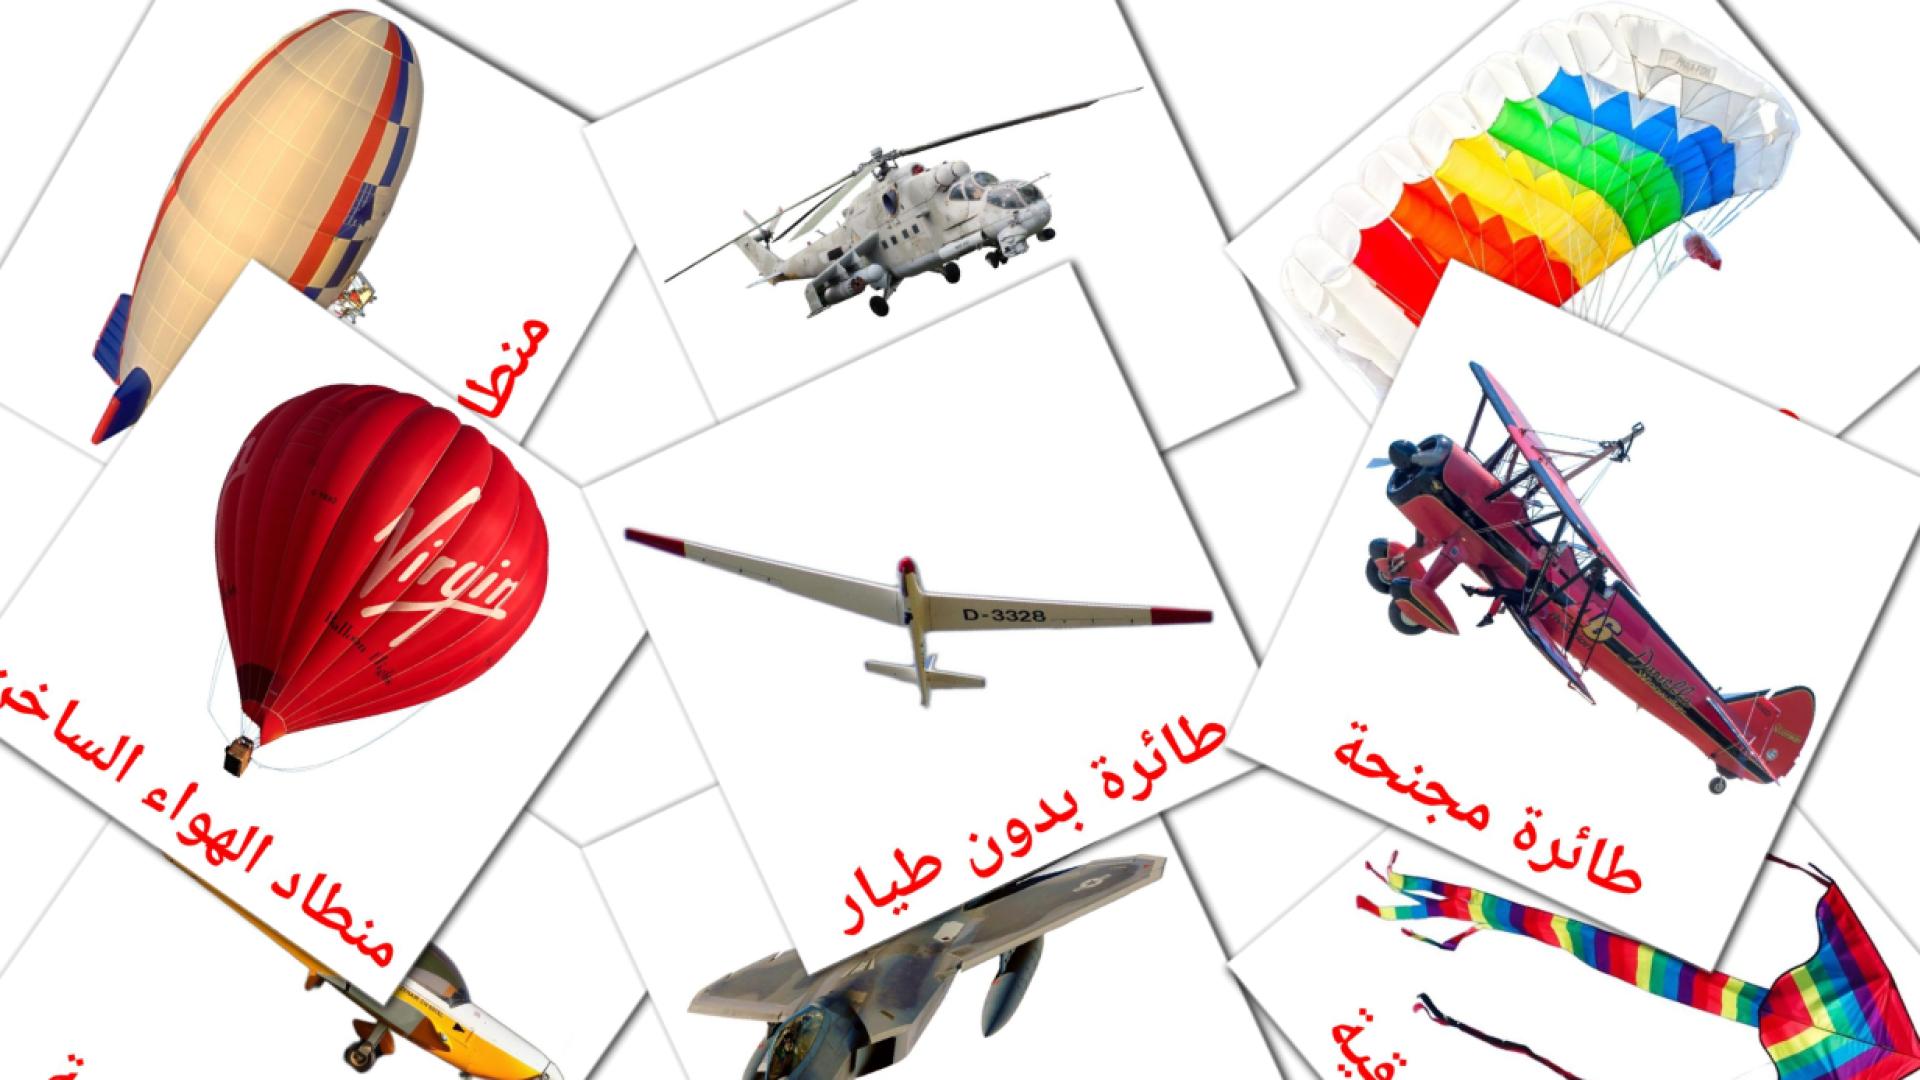 Lucht - arabische woordenschatkaarten